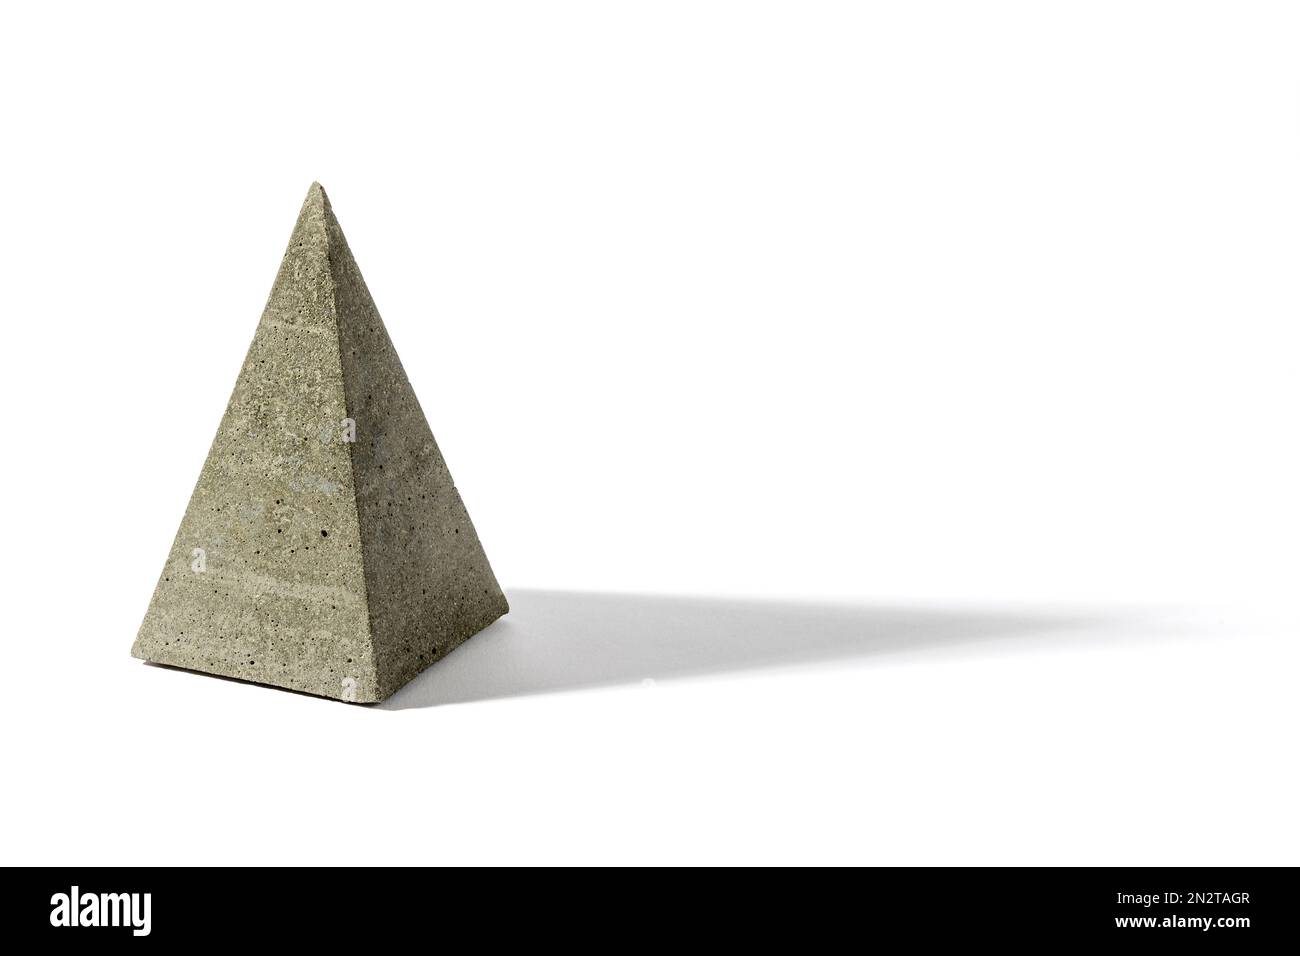 Escultura en forma de pirámide gris hecha de sombra geométrica de fundición de cemento sobre fondo blanco Foto de stock